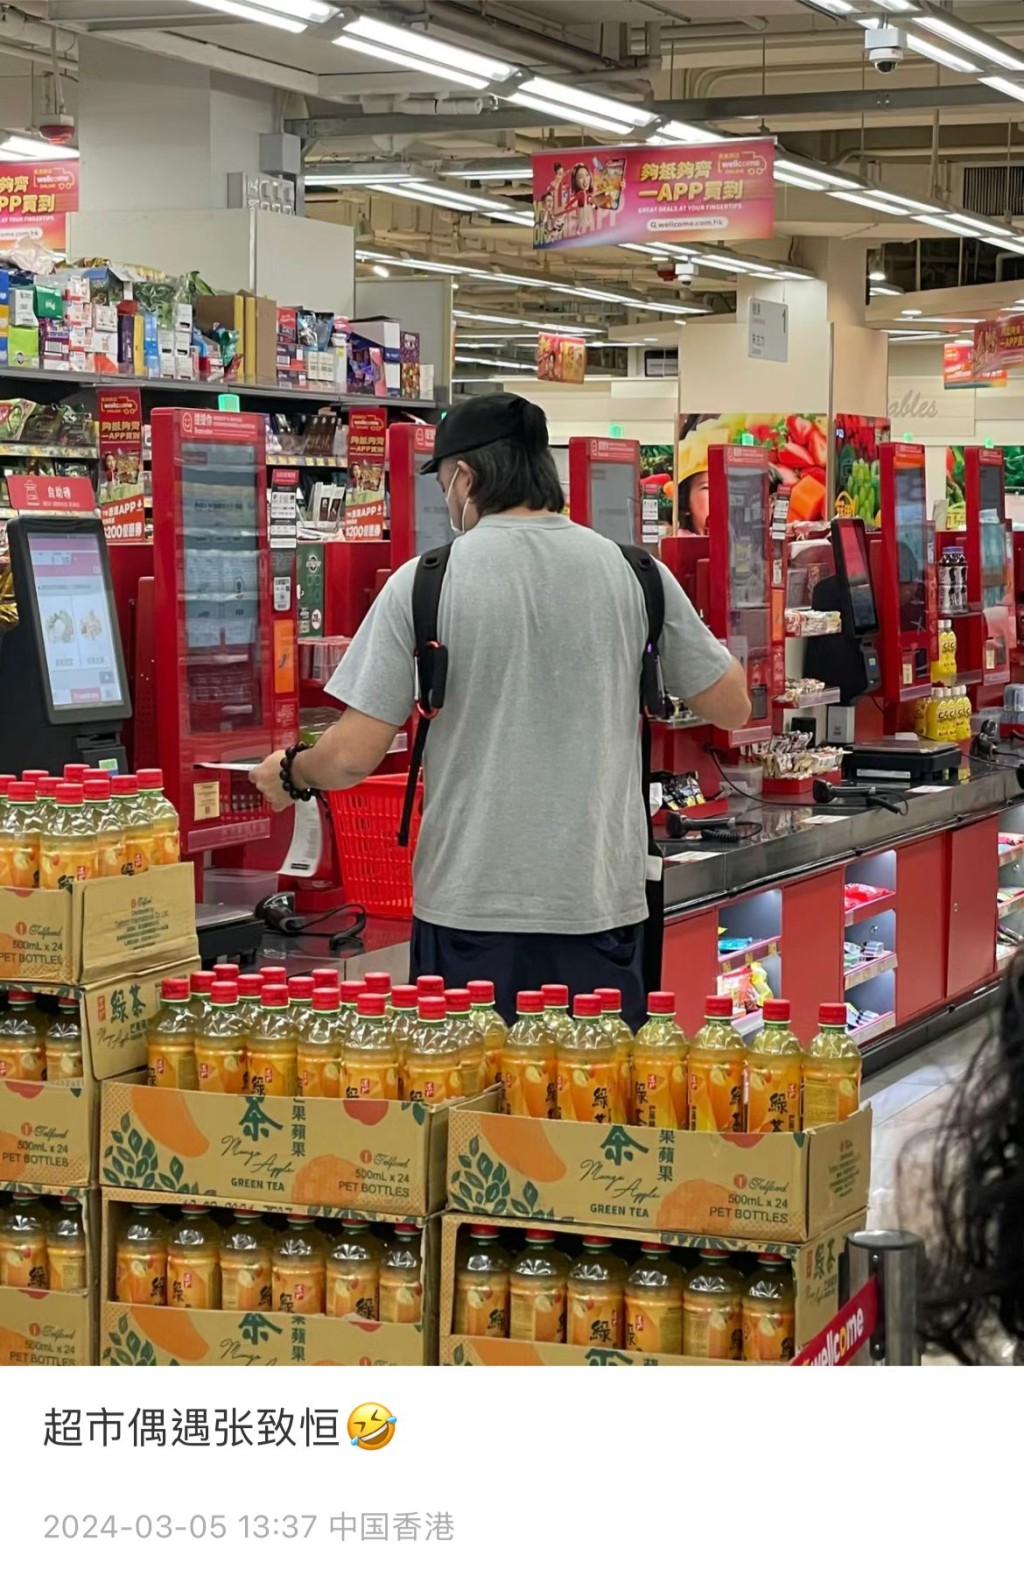 日前有網民於社交網聲稱在港一間超市偶遇張致恒，並附上一張對方的背影圖。